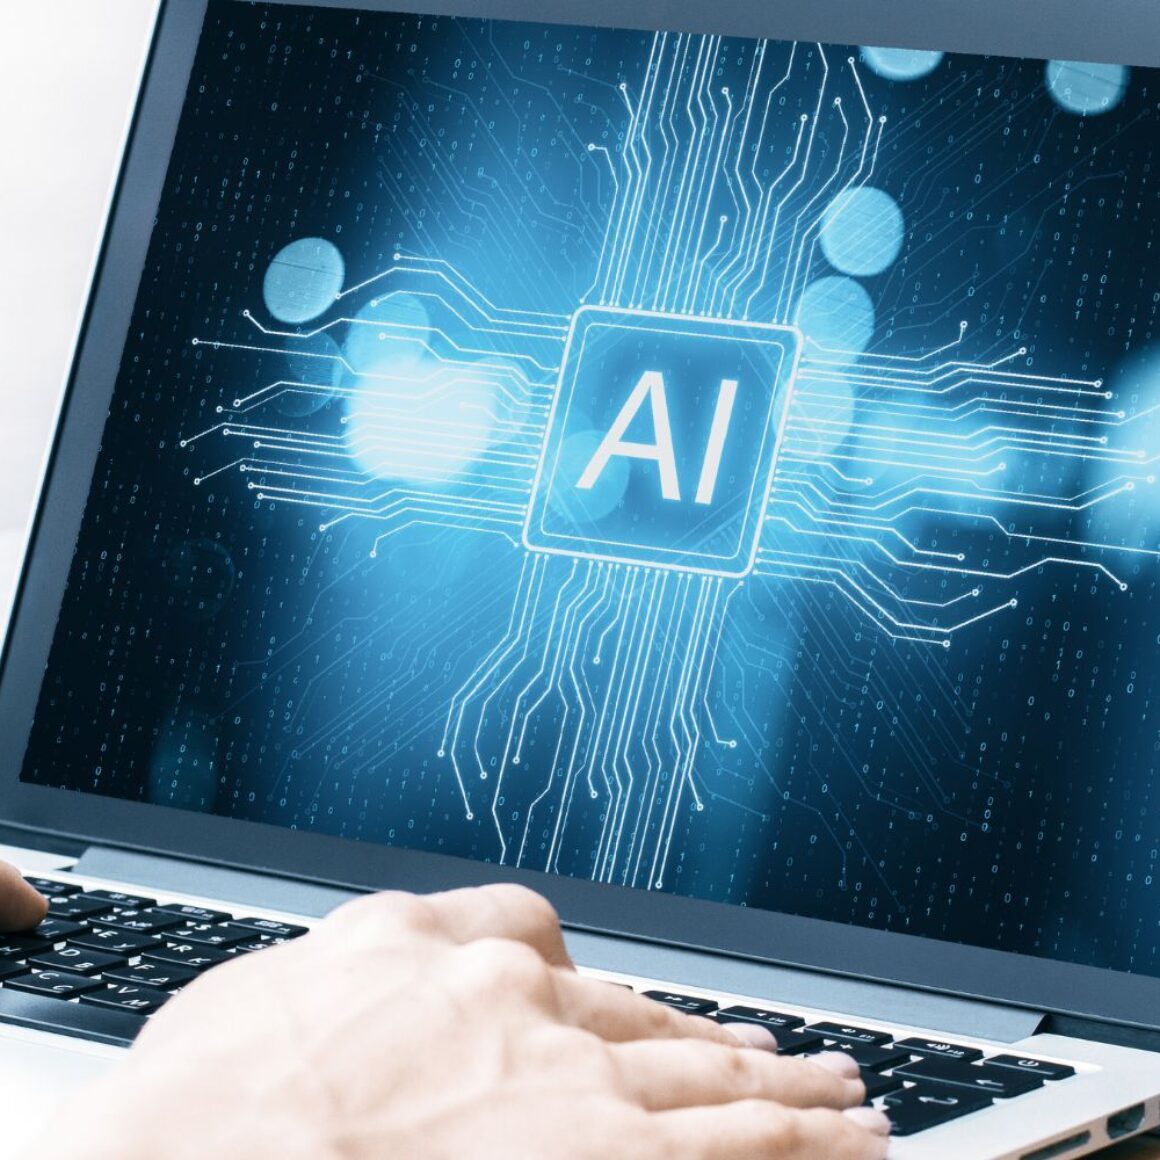 Laptop, Hände auf Tastatur, Schrift "AI" auf dem Bildschirm